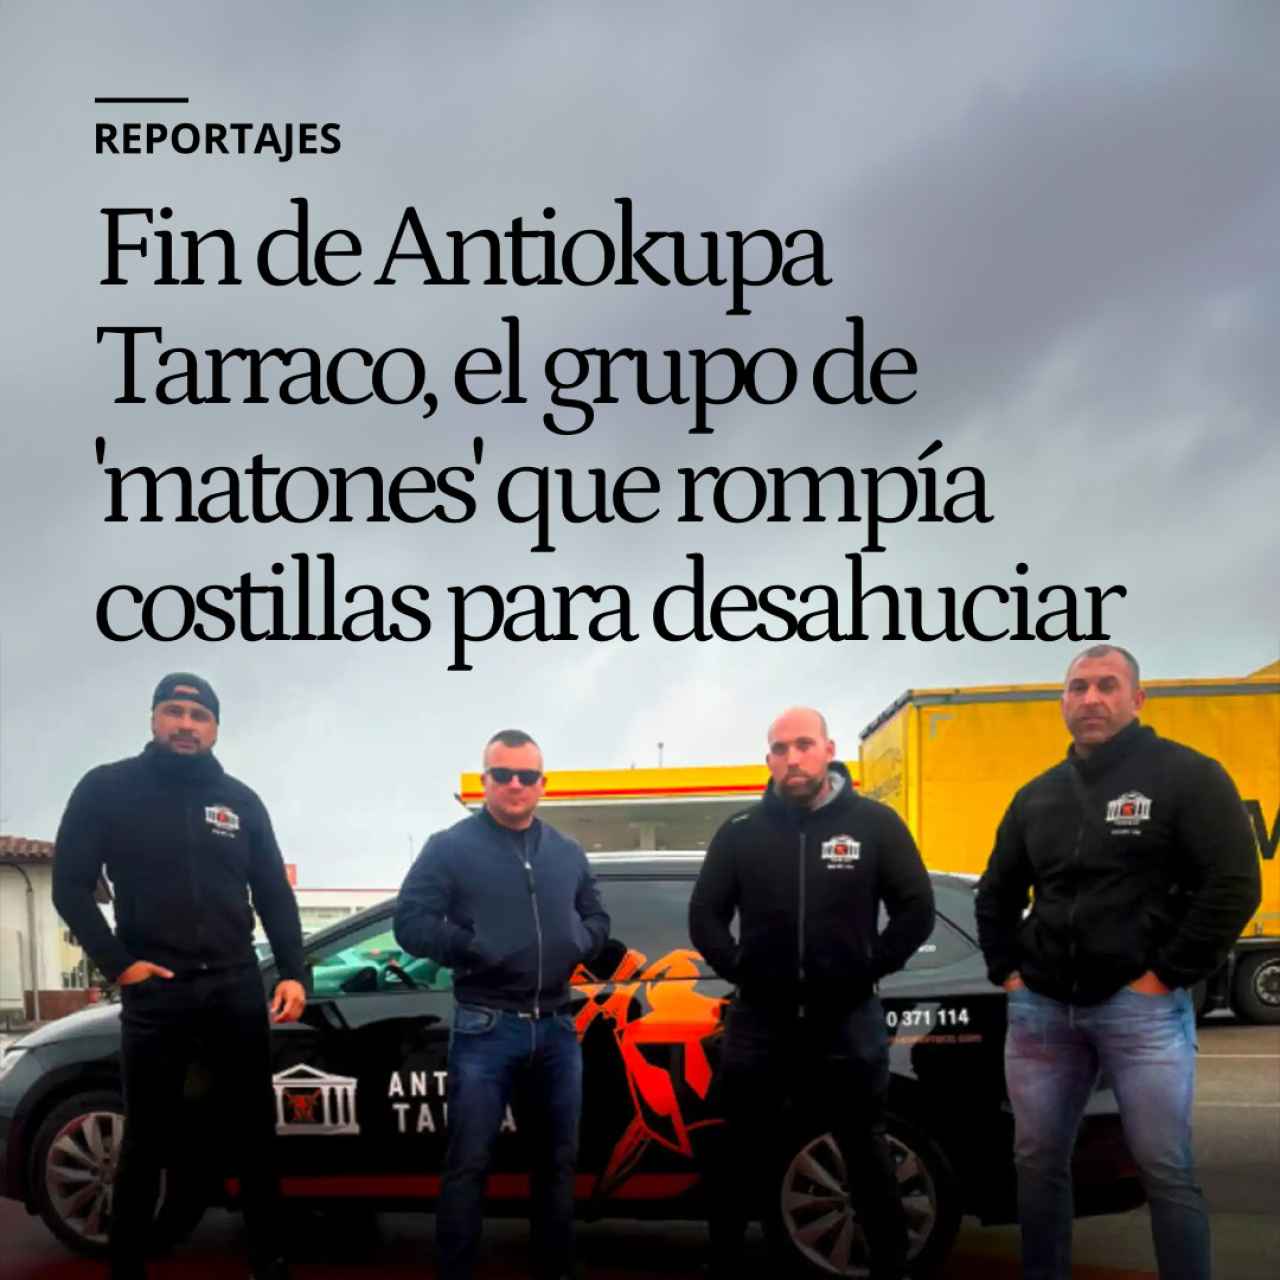 Fin de Antiokupa Tarraco, el grupo de 'matones' que rompía costillas y robaba perros para desahuciar